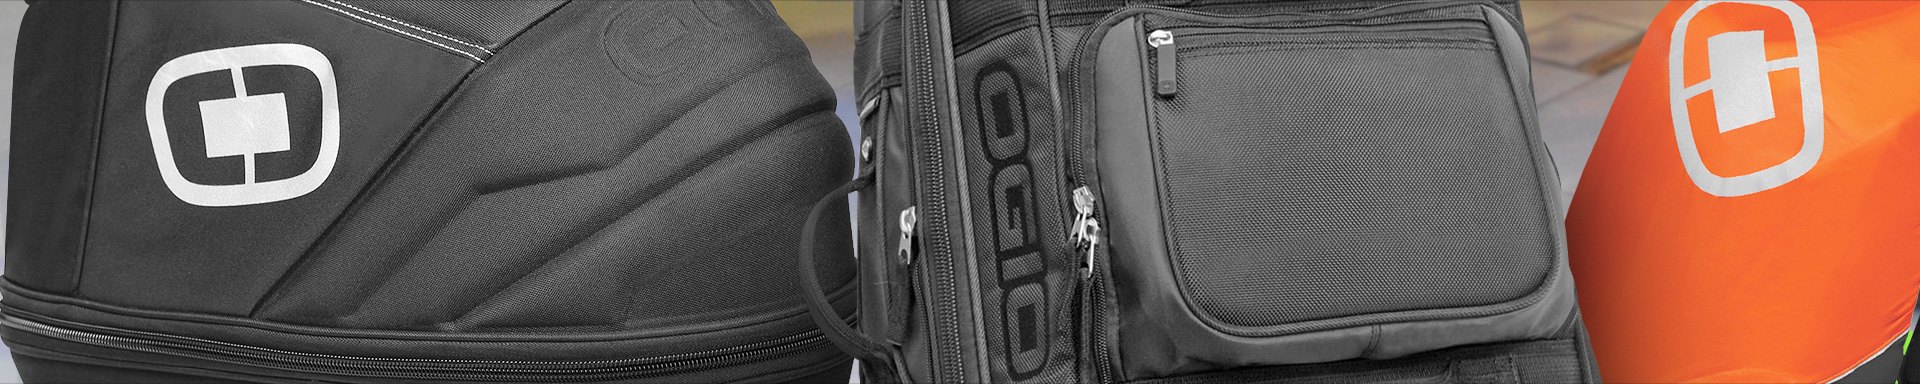 Ogio Rider Bags